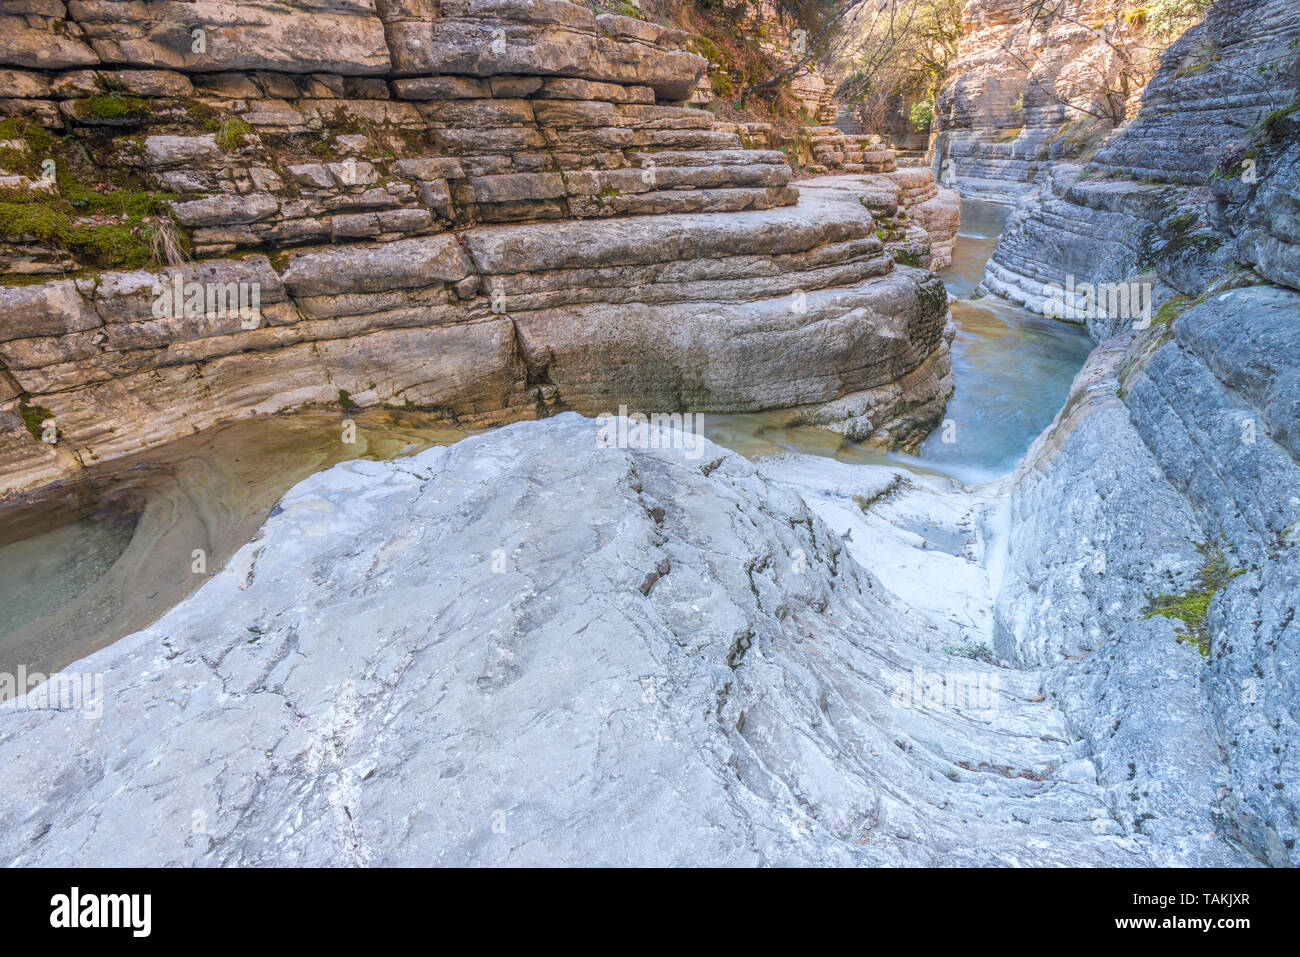 Papingo rock pools au lever du soleil, en couches de strates de roche Papingo. Célèbre attraction touristique en Épire, les parois du canyon en stratifié, Grèce. Papingo Banque D'Images